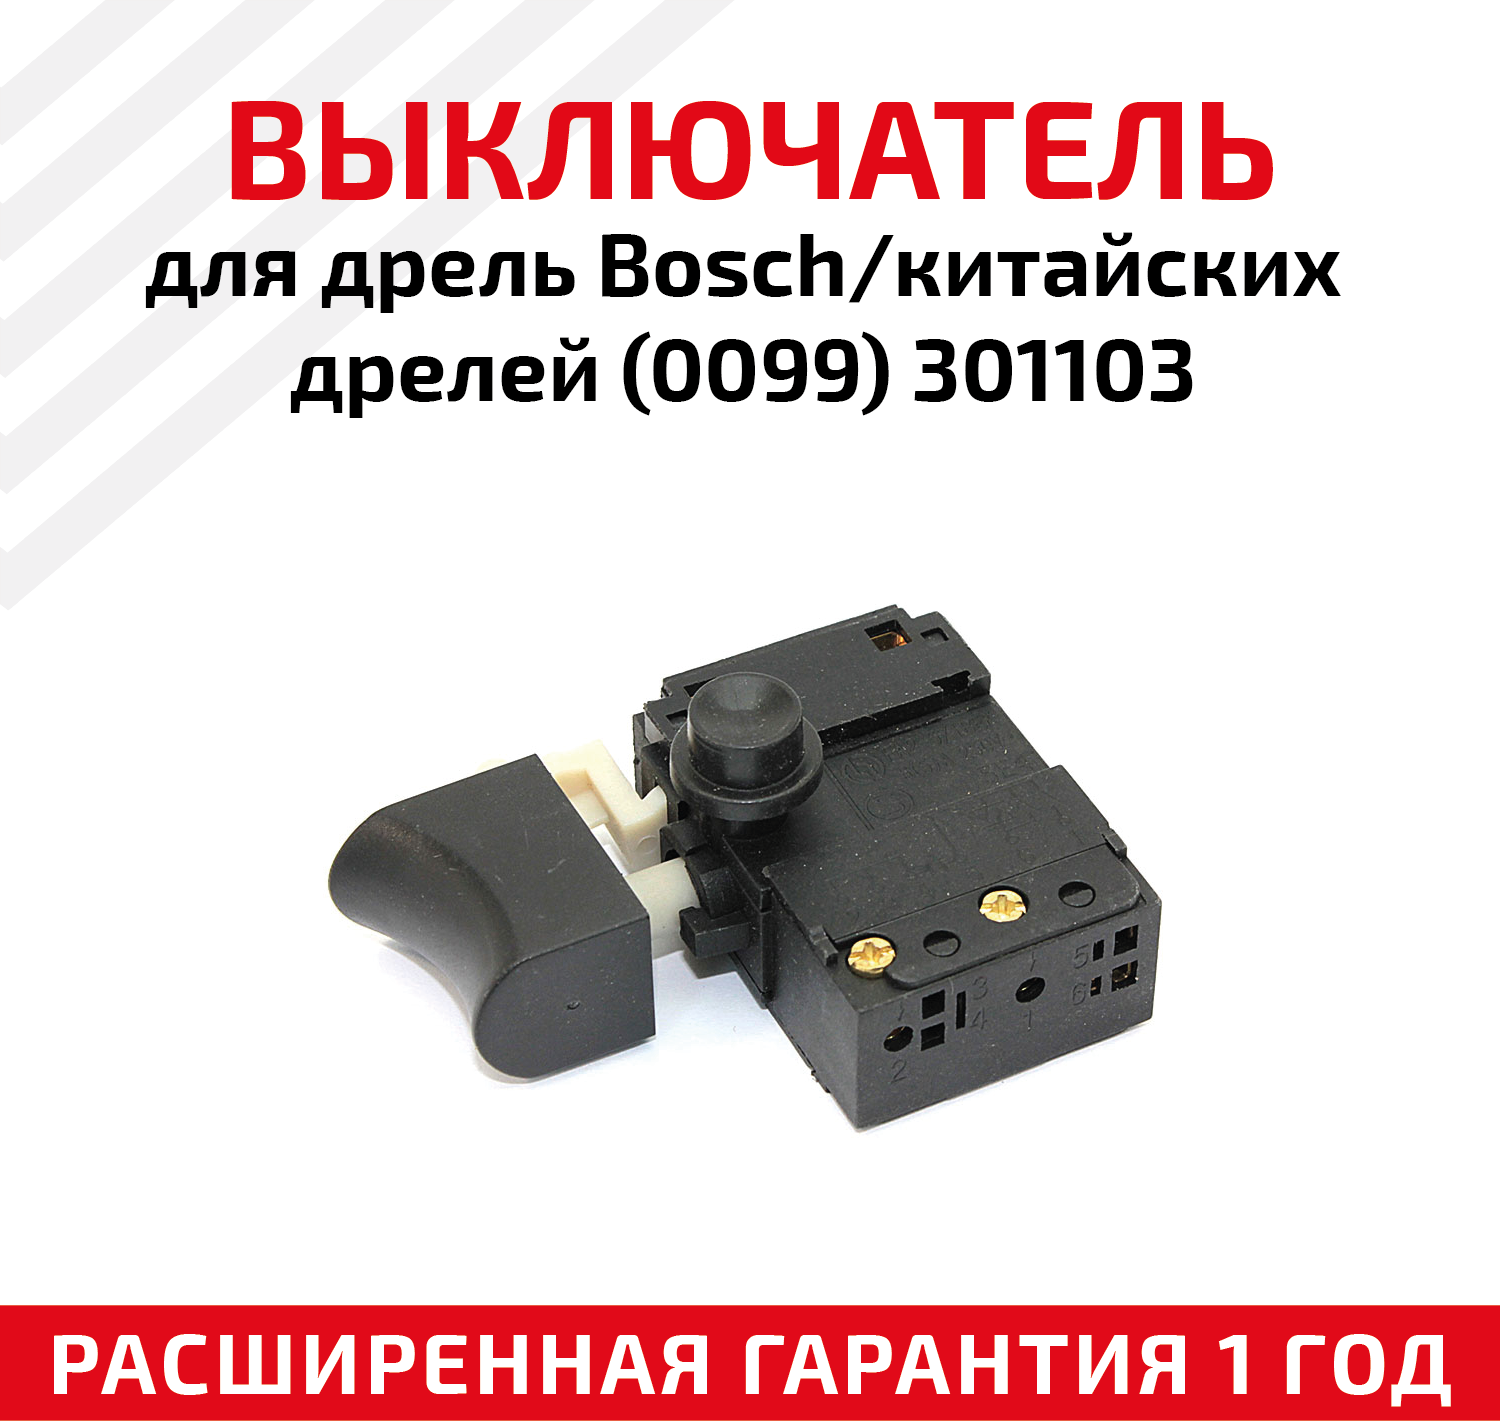 Выключатель для дрель Bosch/китайских дрелей(0099) 301103